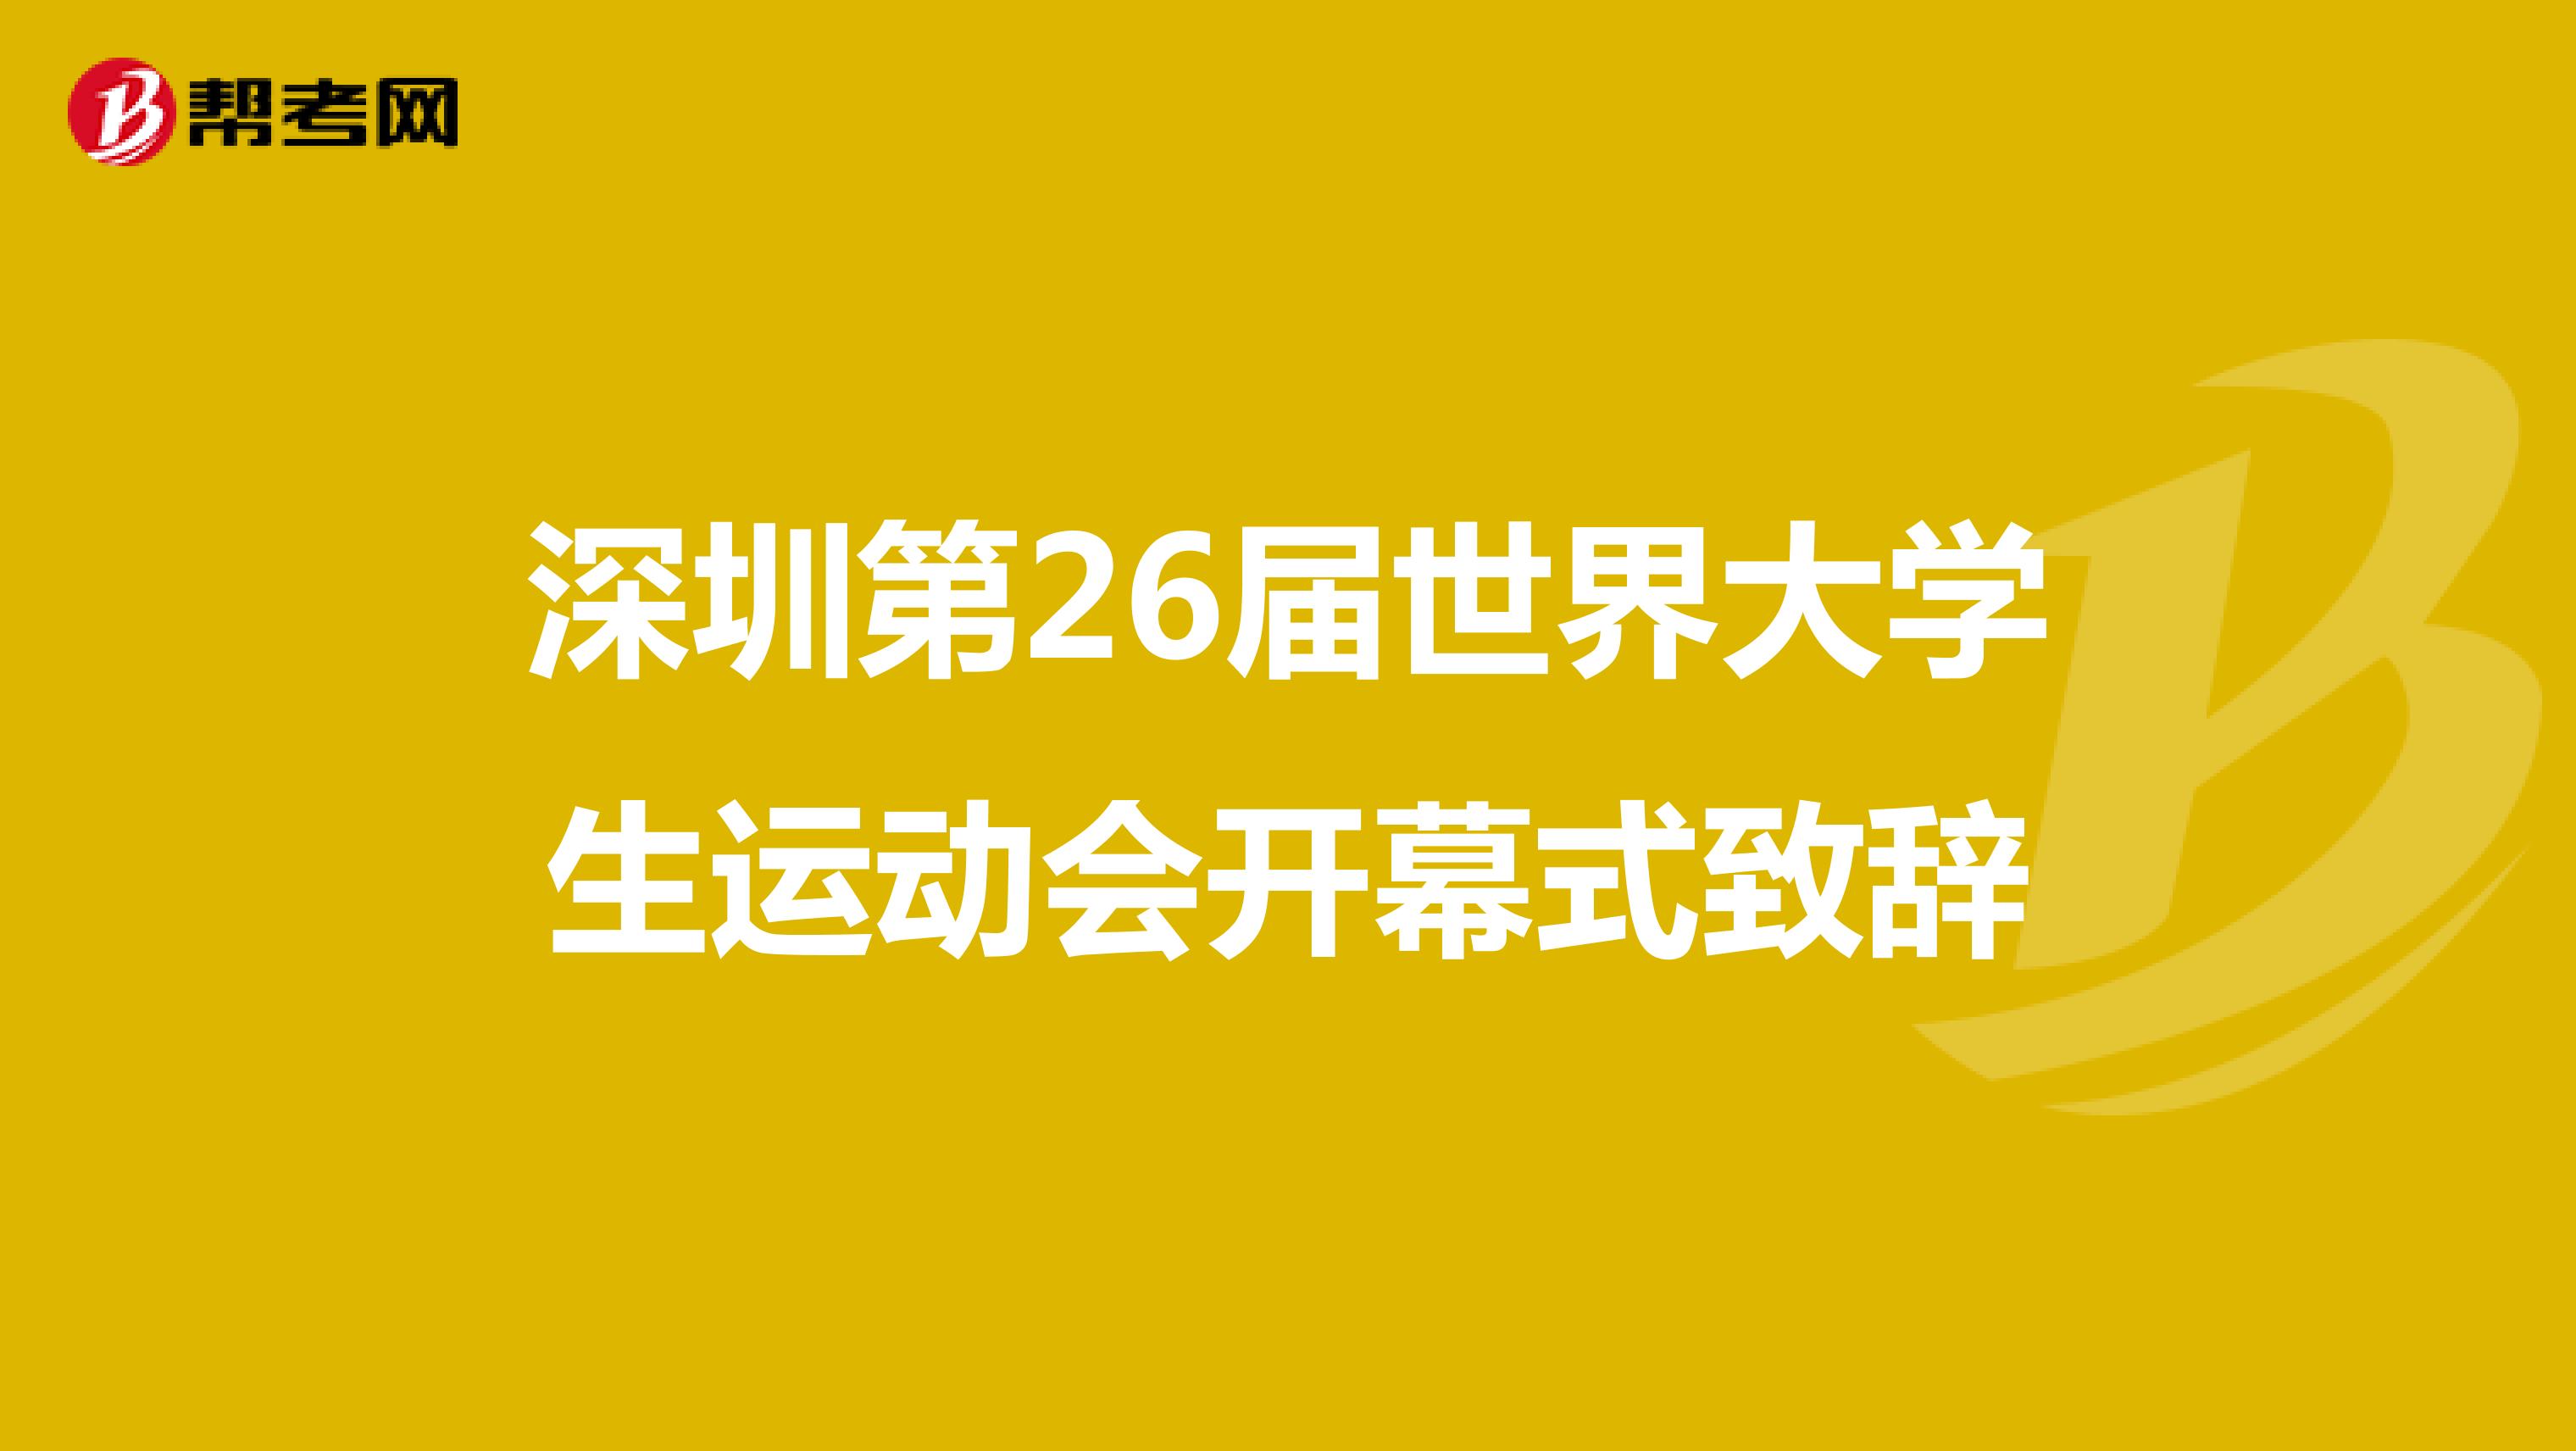 深圳第26届世界大学生运动会开幕式致辞